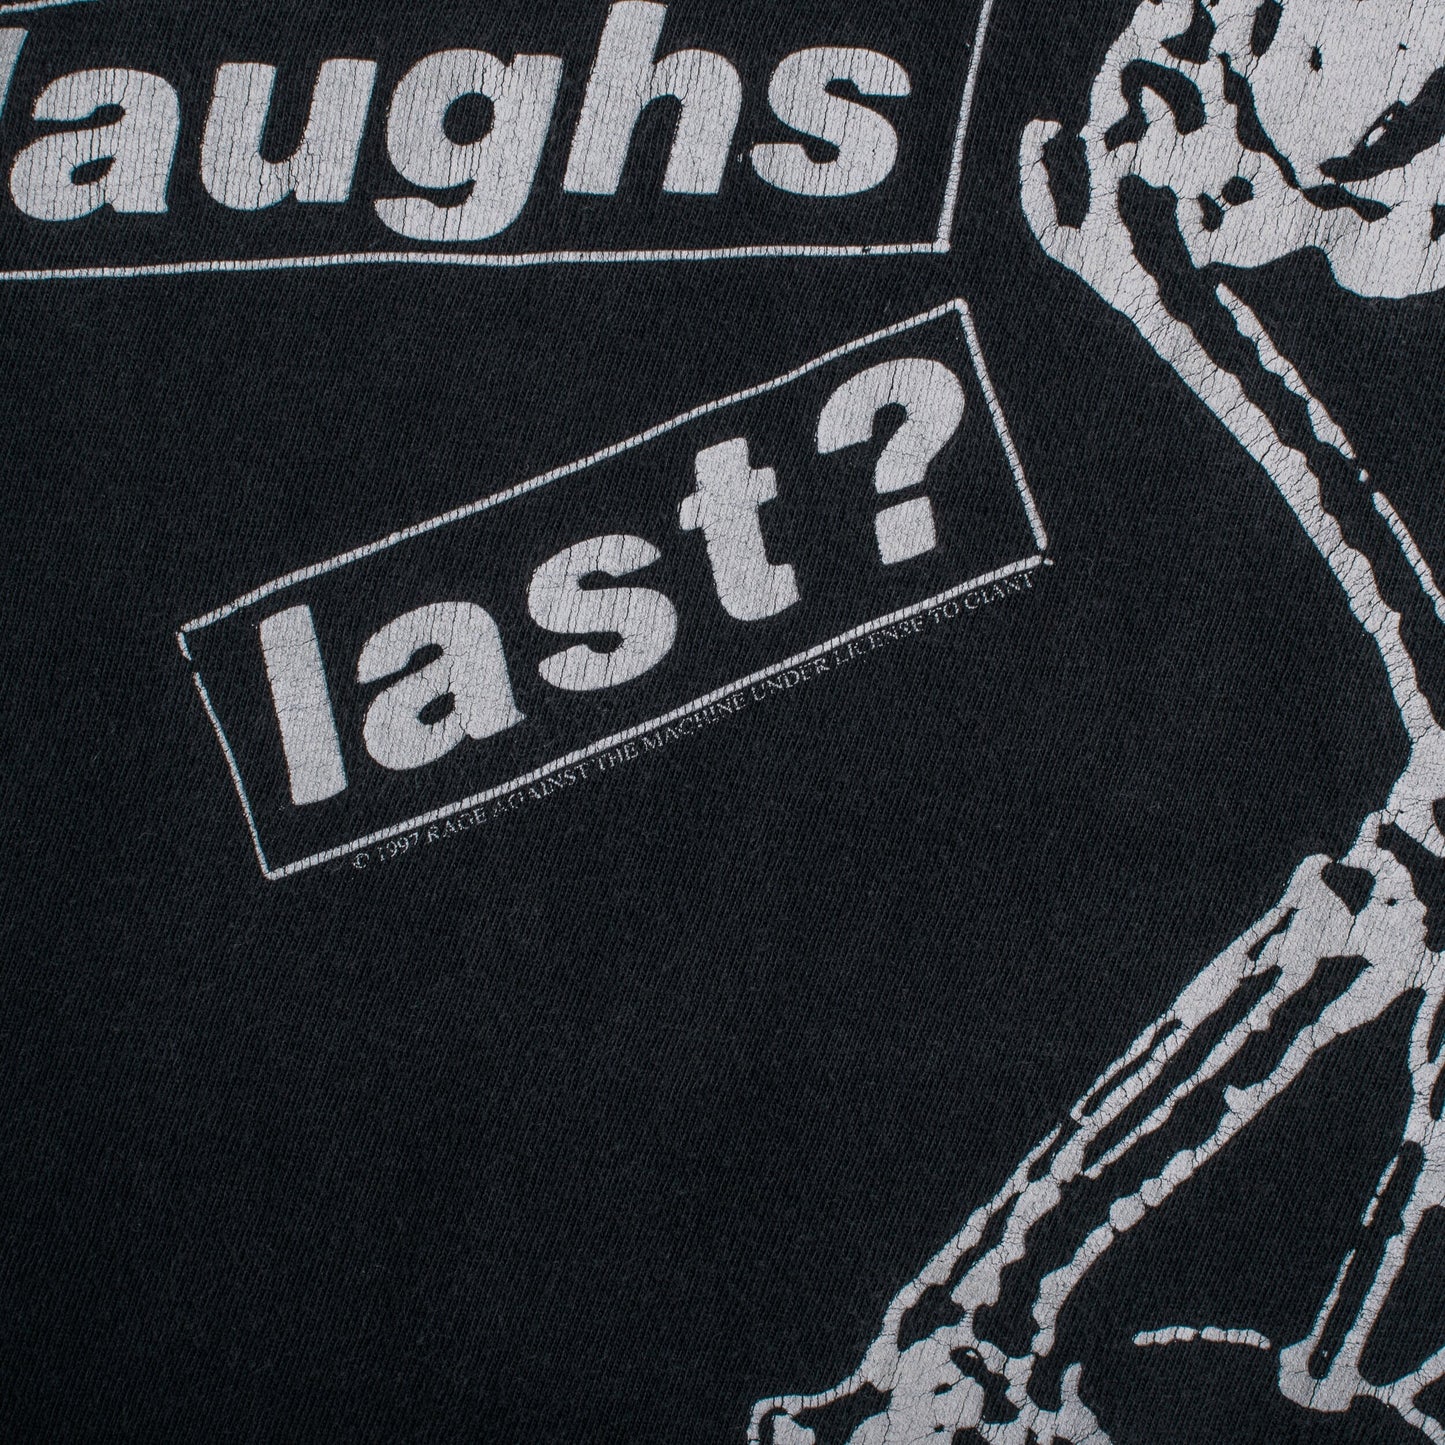 Vintage 1997 Rage Against The Machine Who Laughs Last Tour T-Shirt